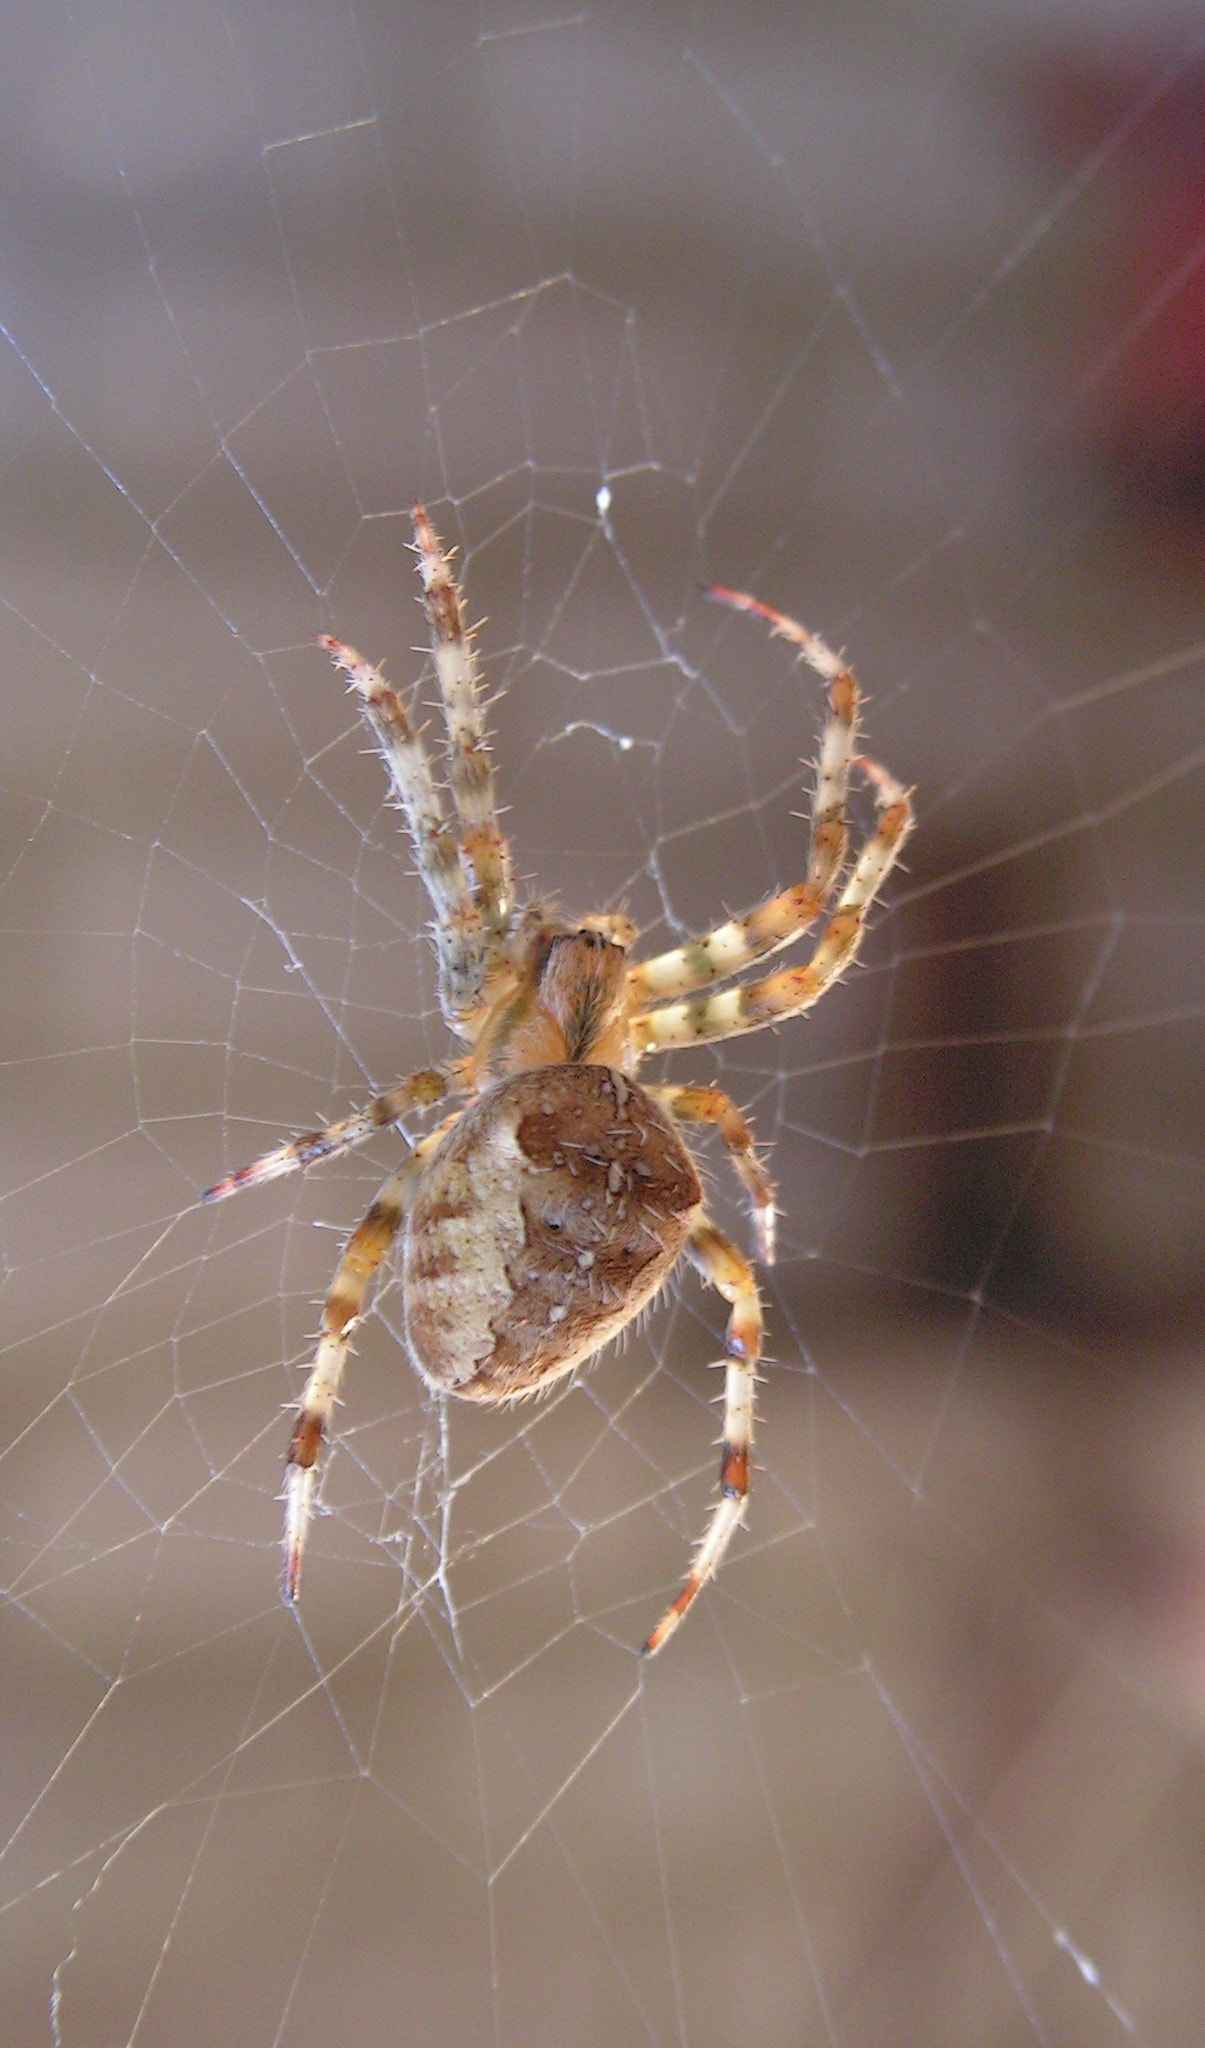 KONICA MINOLTA DiMAGE Z10 sample photo. Garden spider photography